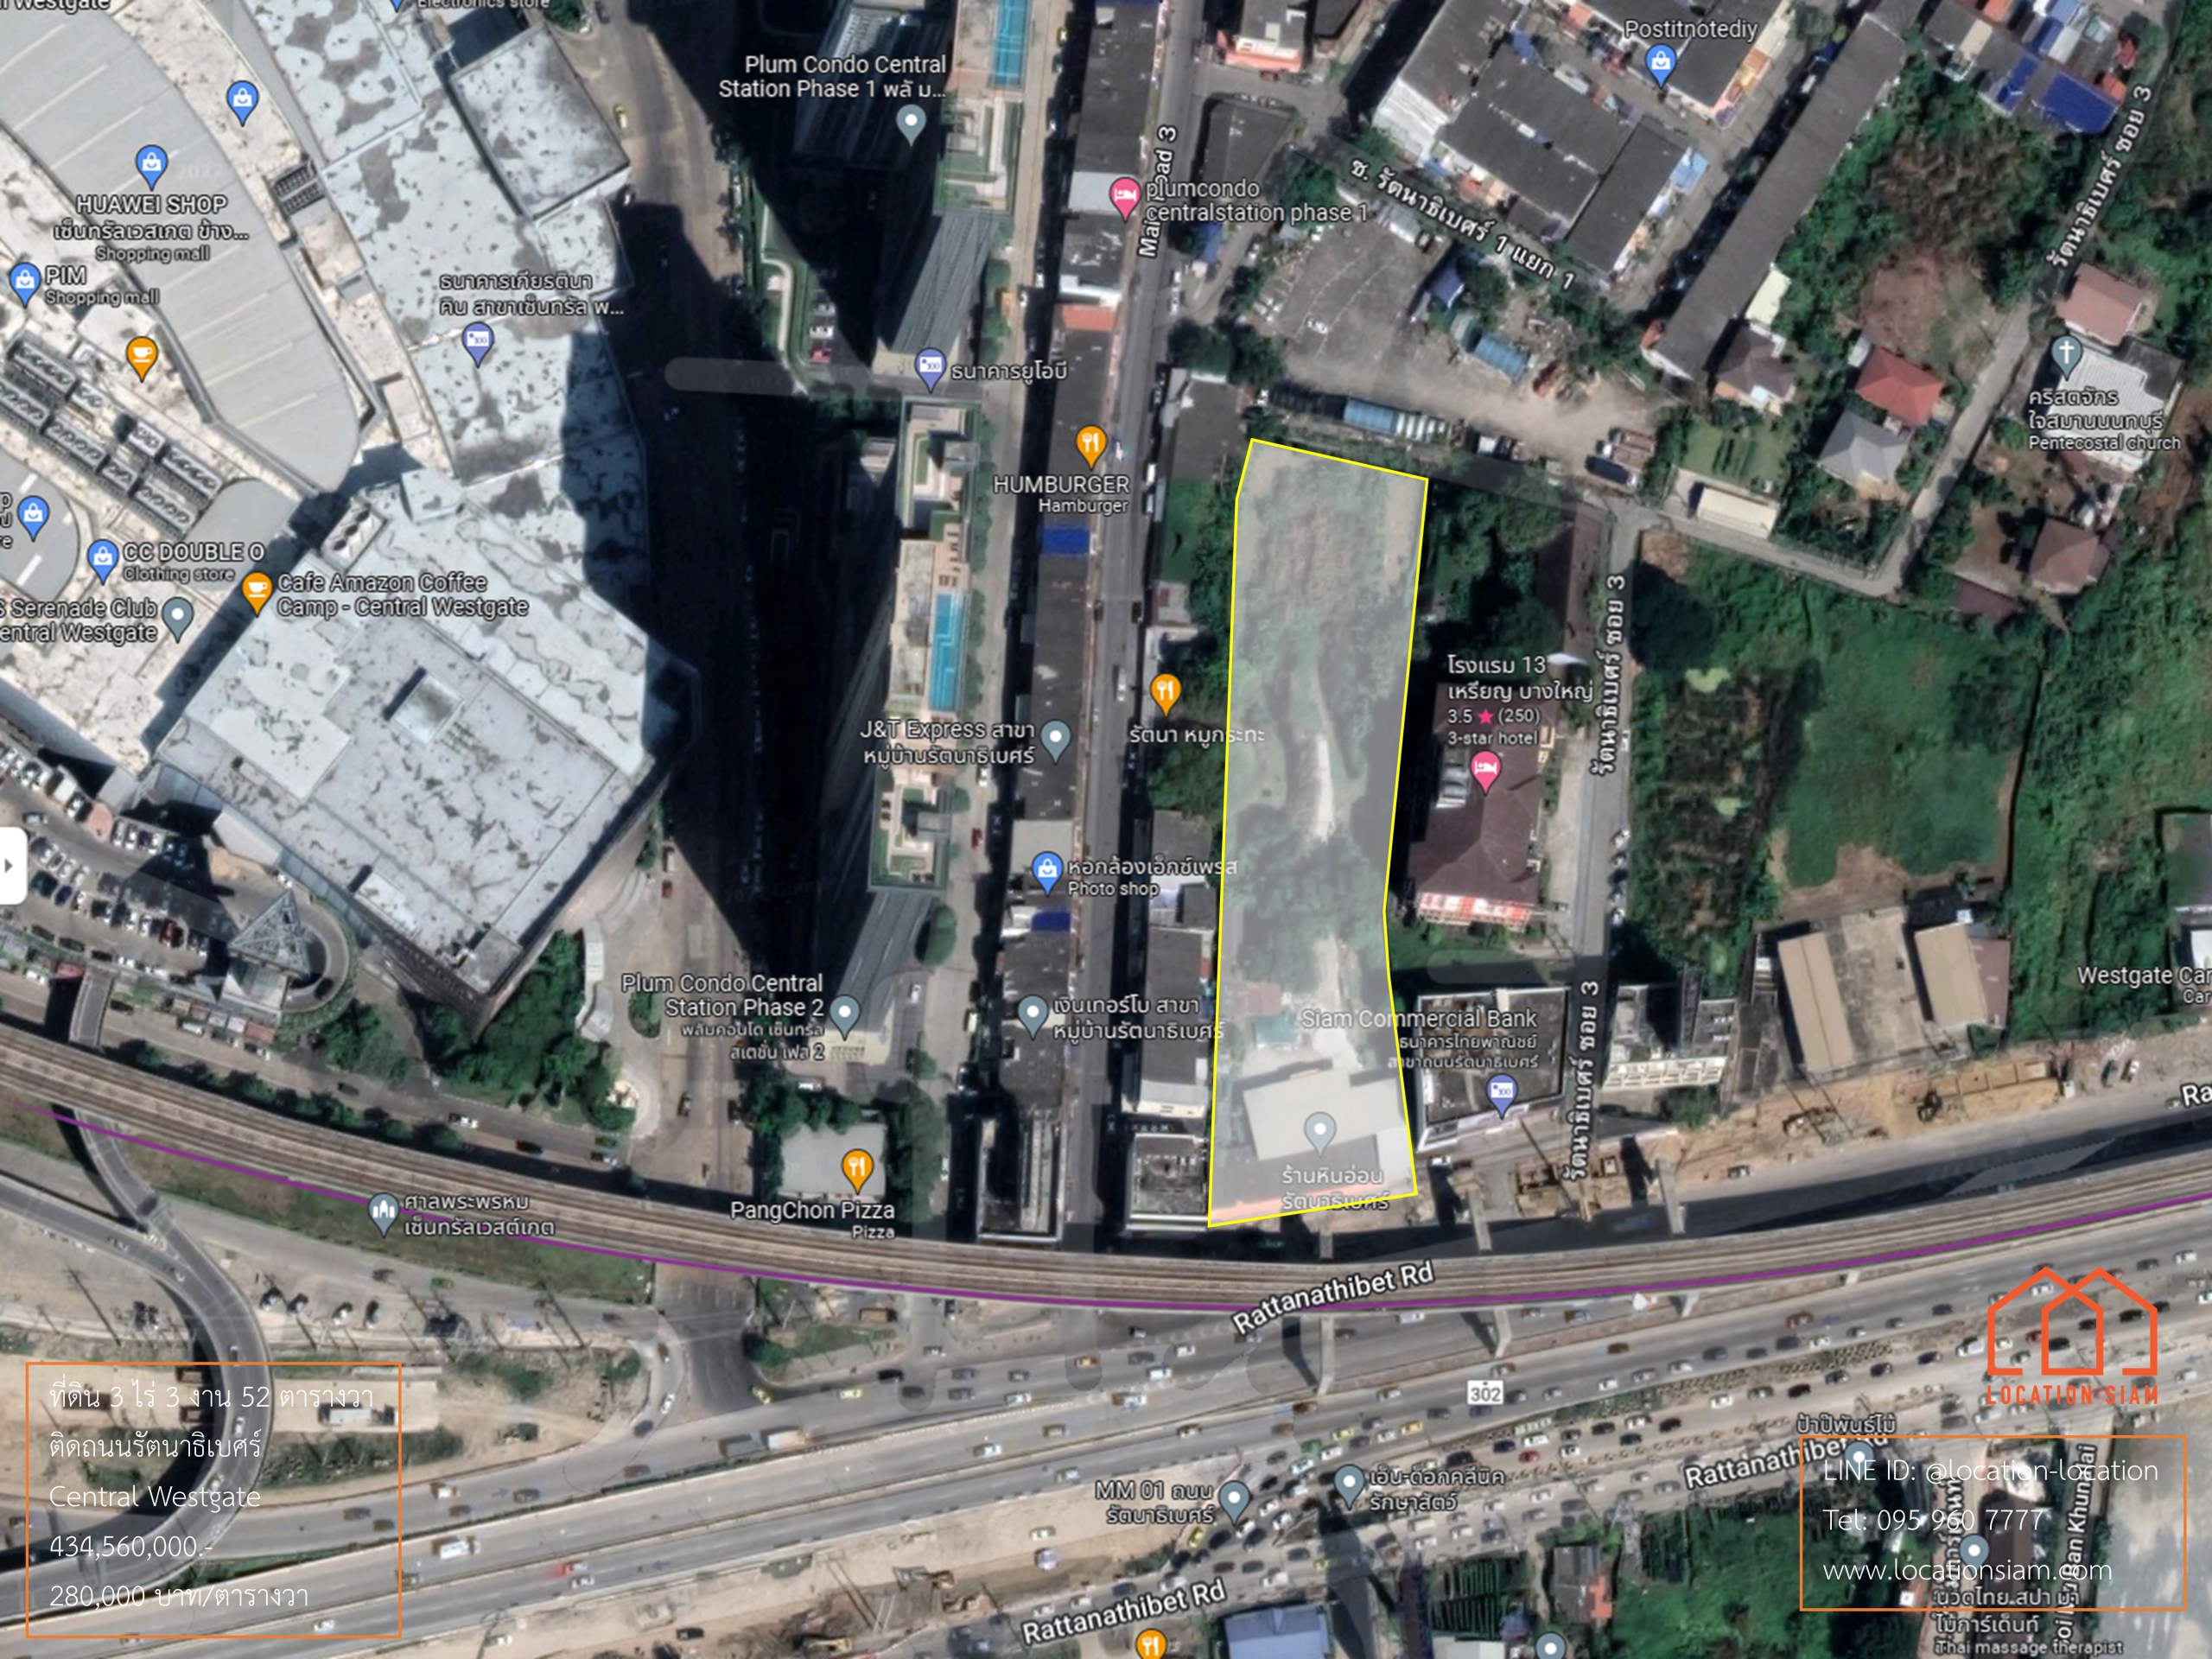 ที่ดิน 3 ไร่ 3 งาน 52 ตารางวา ติดถนนใหญ่รัตนาธิเบศร์, 50 เมตร เดินไป Central Westgate, กว้าง 43 เมตร ลึก 155 เมตร